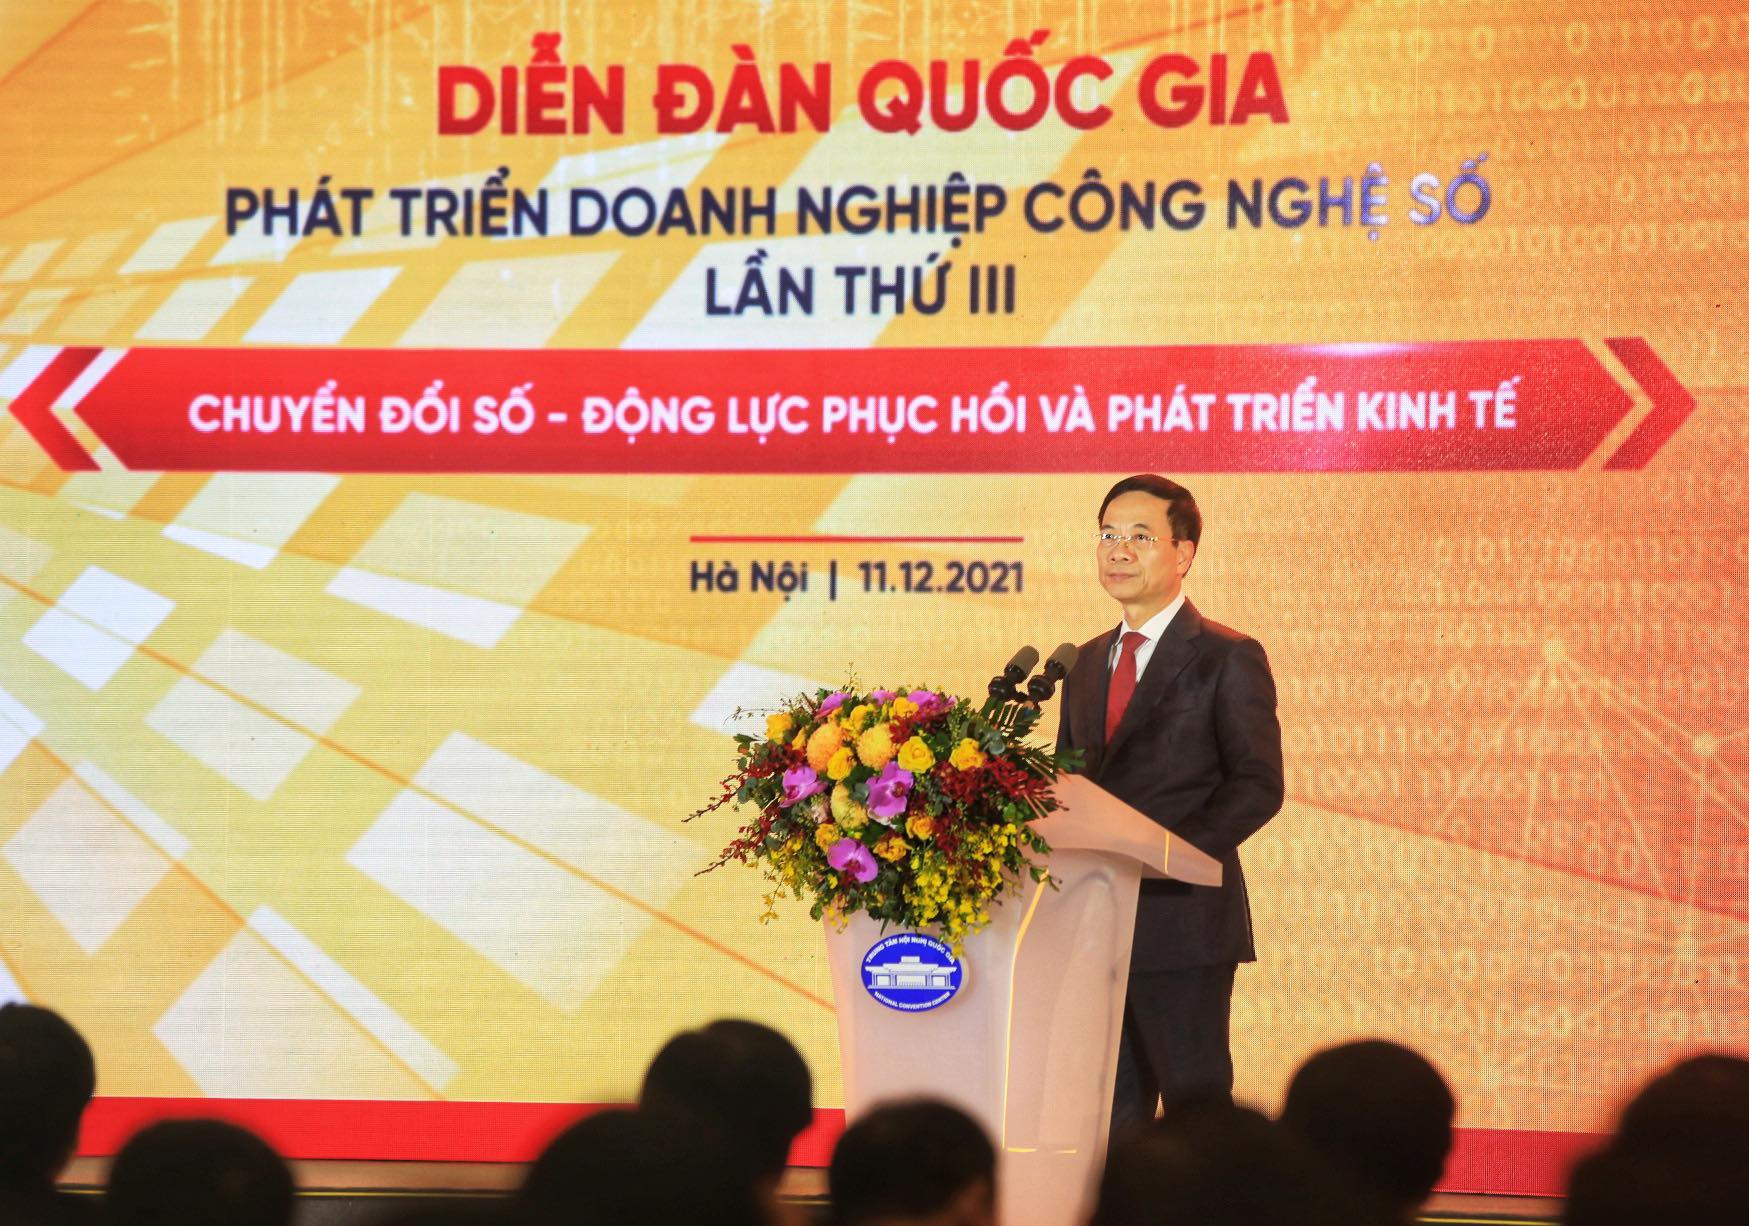 Bộ trưởng Nguyễn Mạnh Hùng: Tôi sẽ từ chức nếu lĩnh vực công nghệ số, chuyển đổi số không phát triển - Ảnh 1.